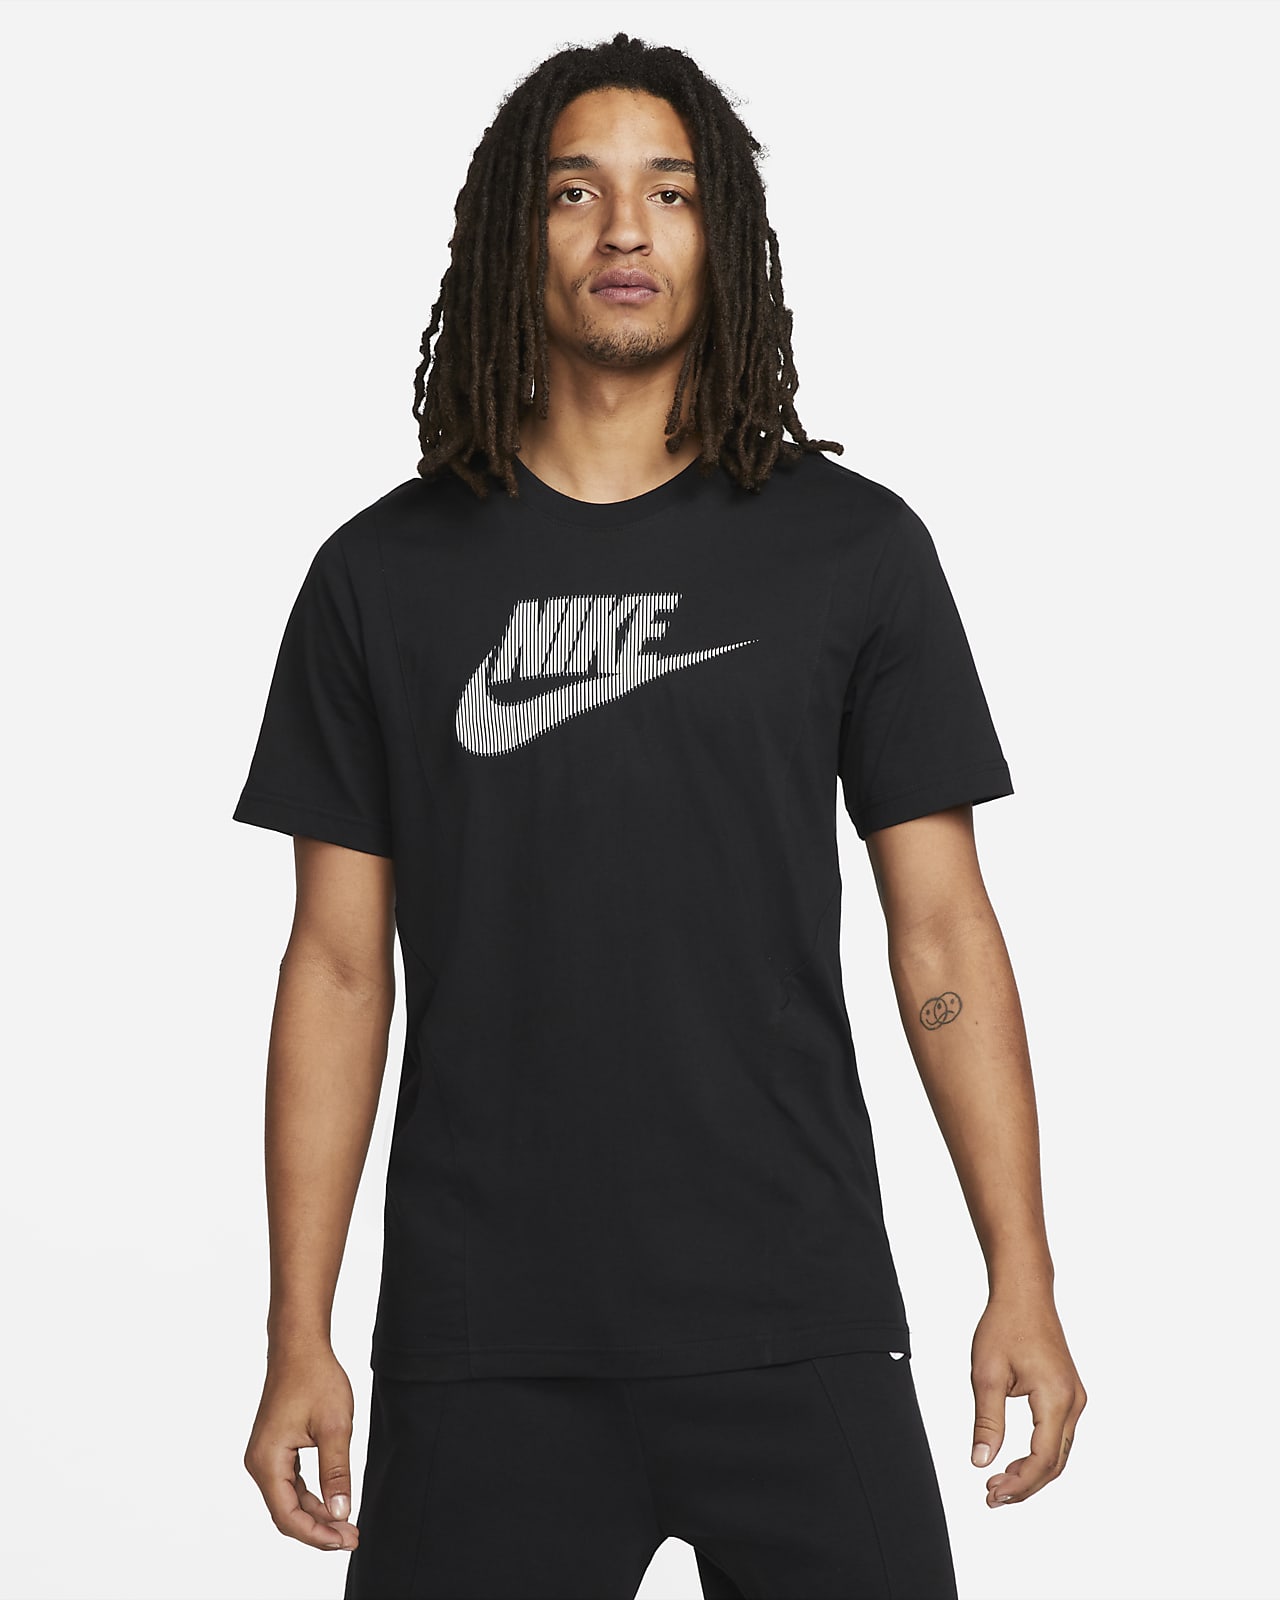 Nike Sportswear Hybrid Short-Sleeve Top